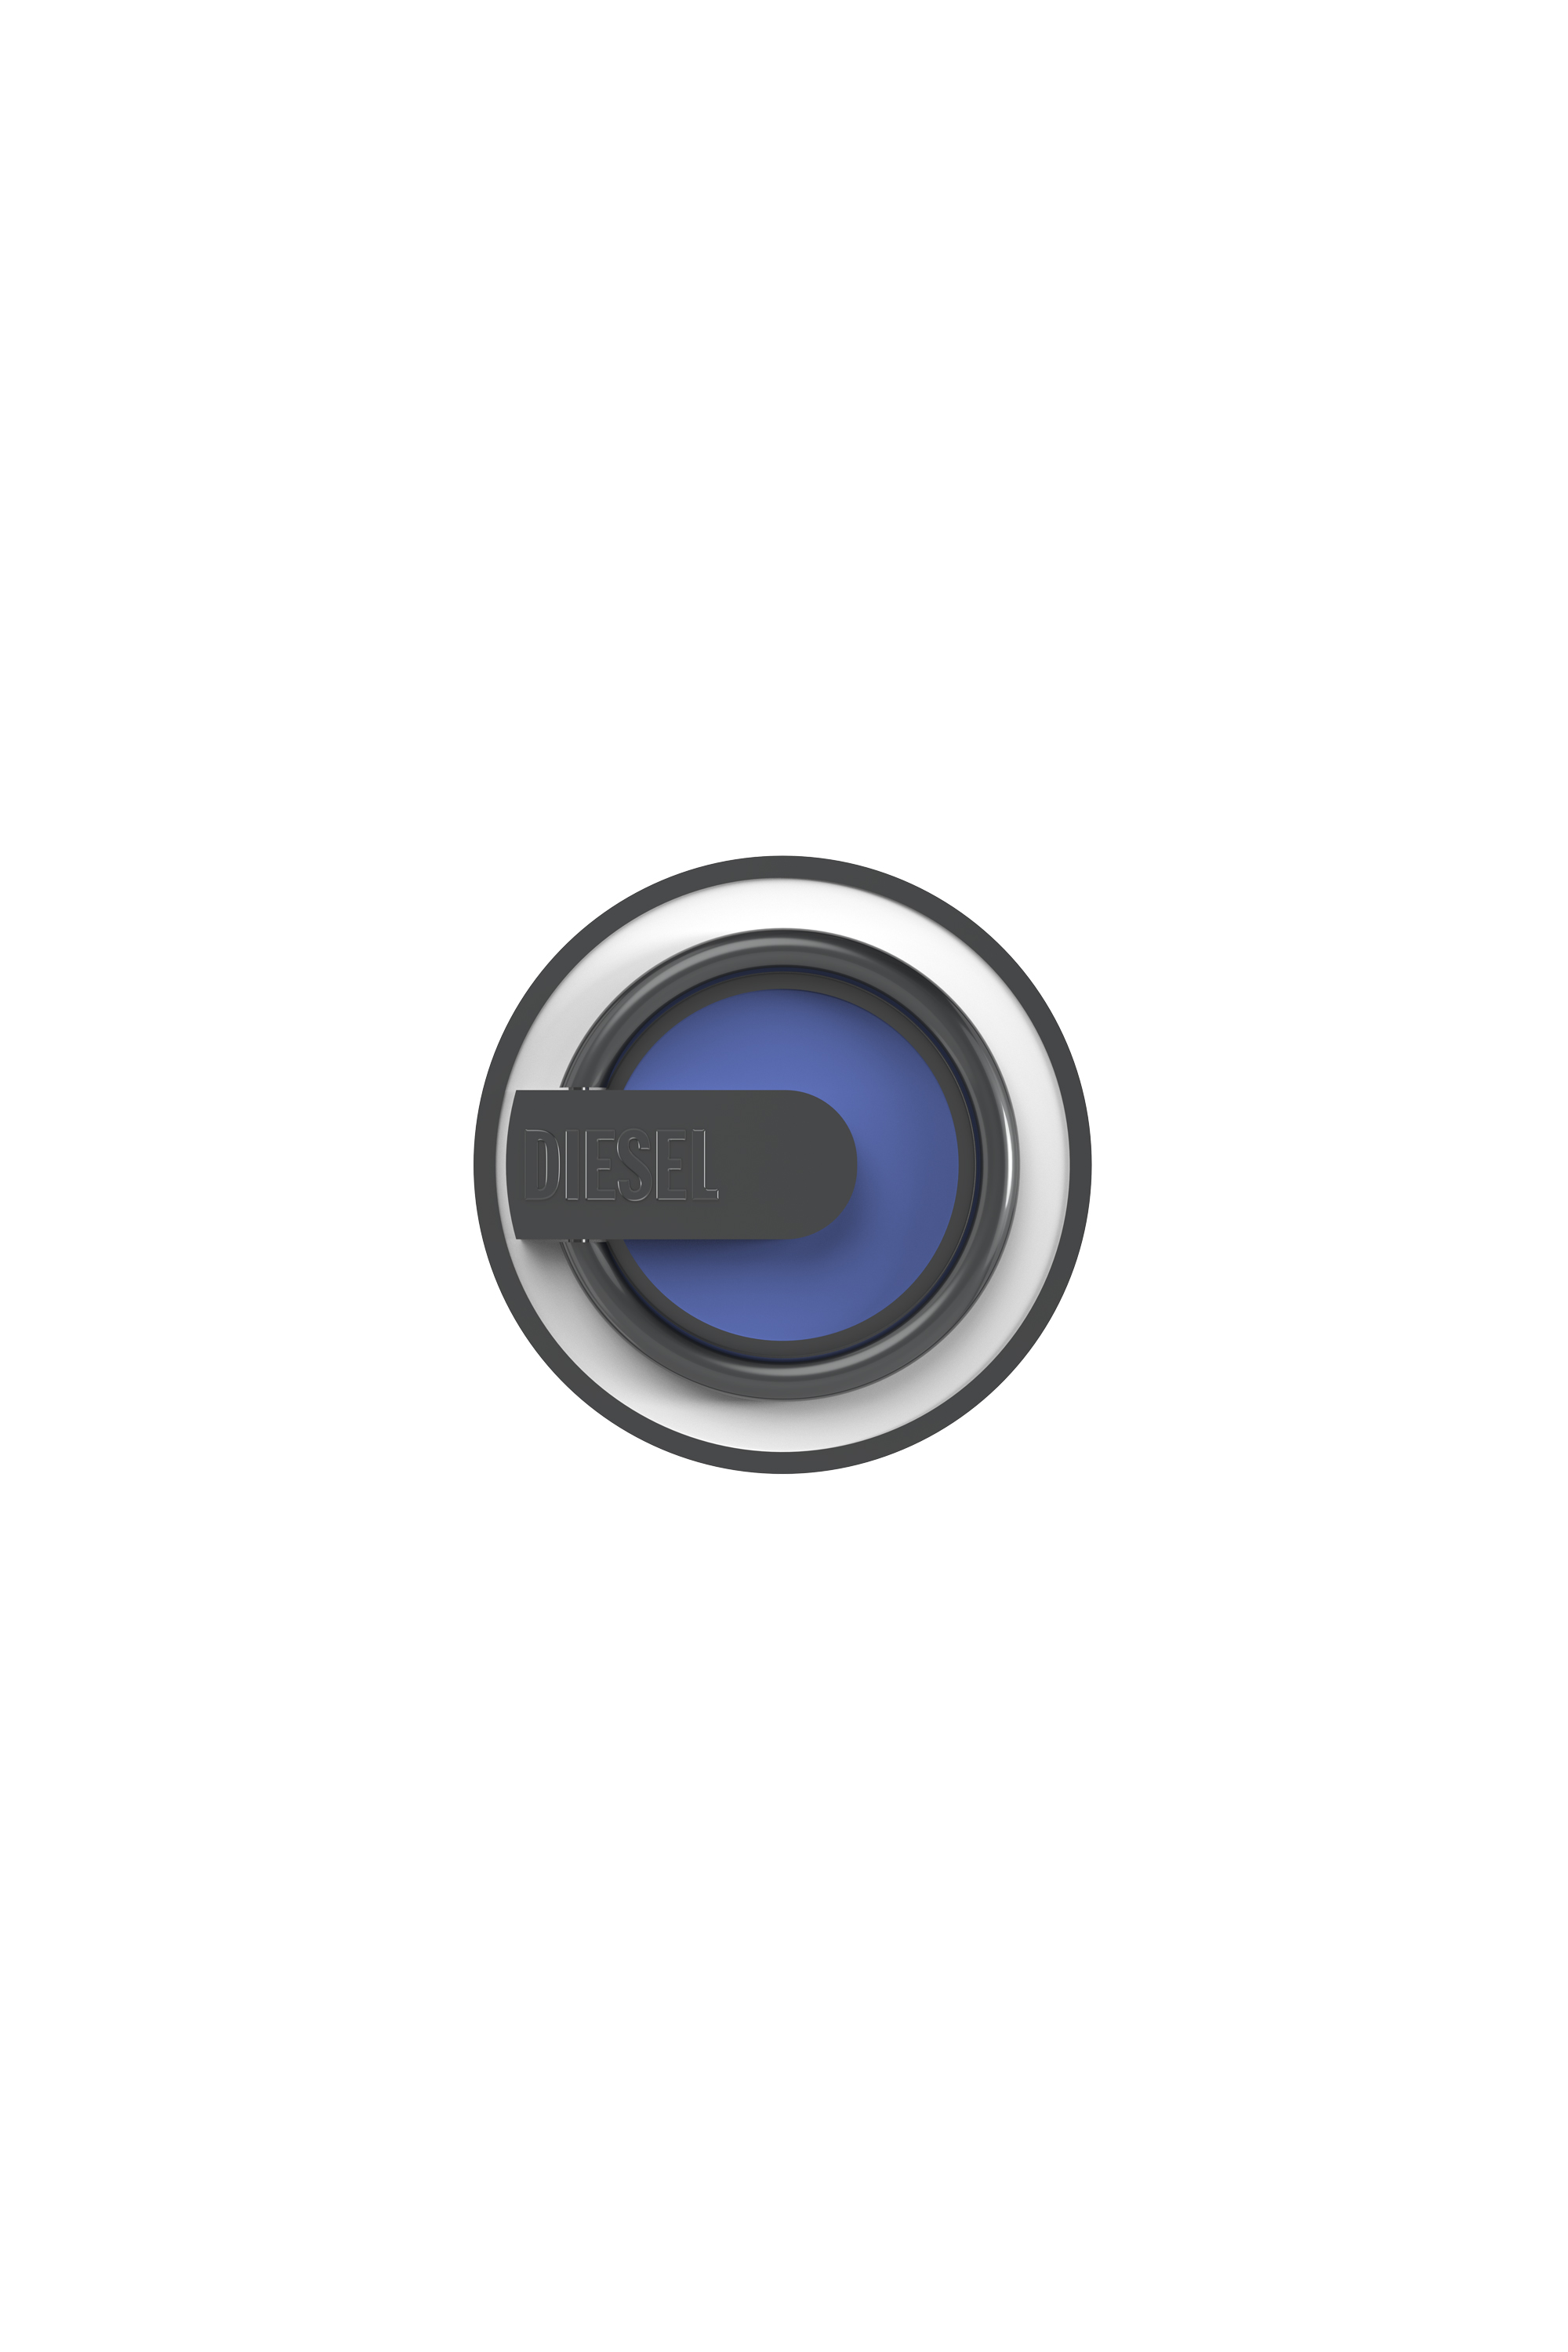 Diesel - Anello universale per smartphone - Supporti ad anello - Unisex - Multicolor